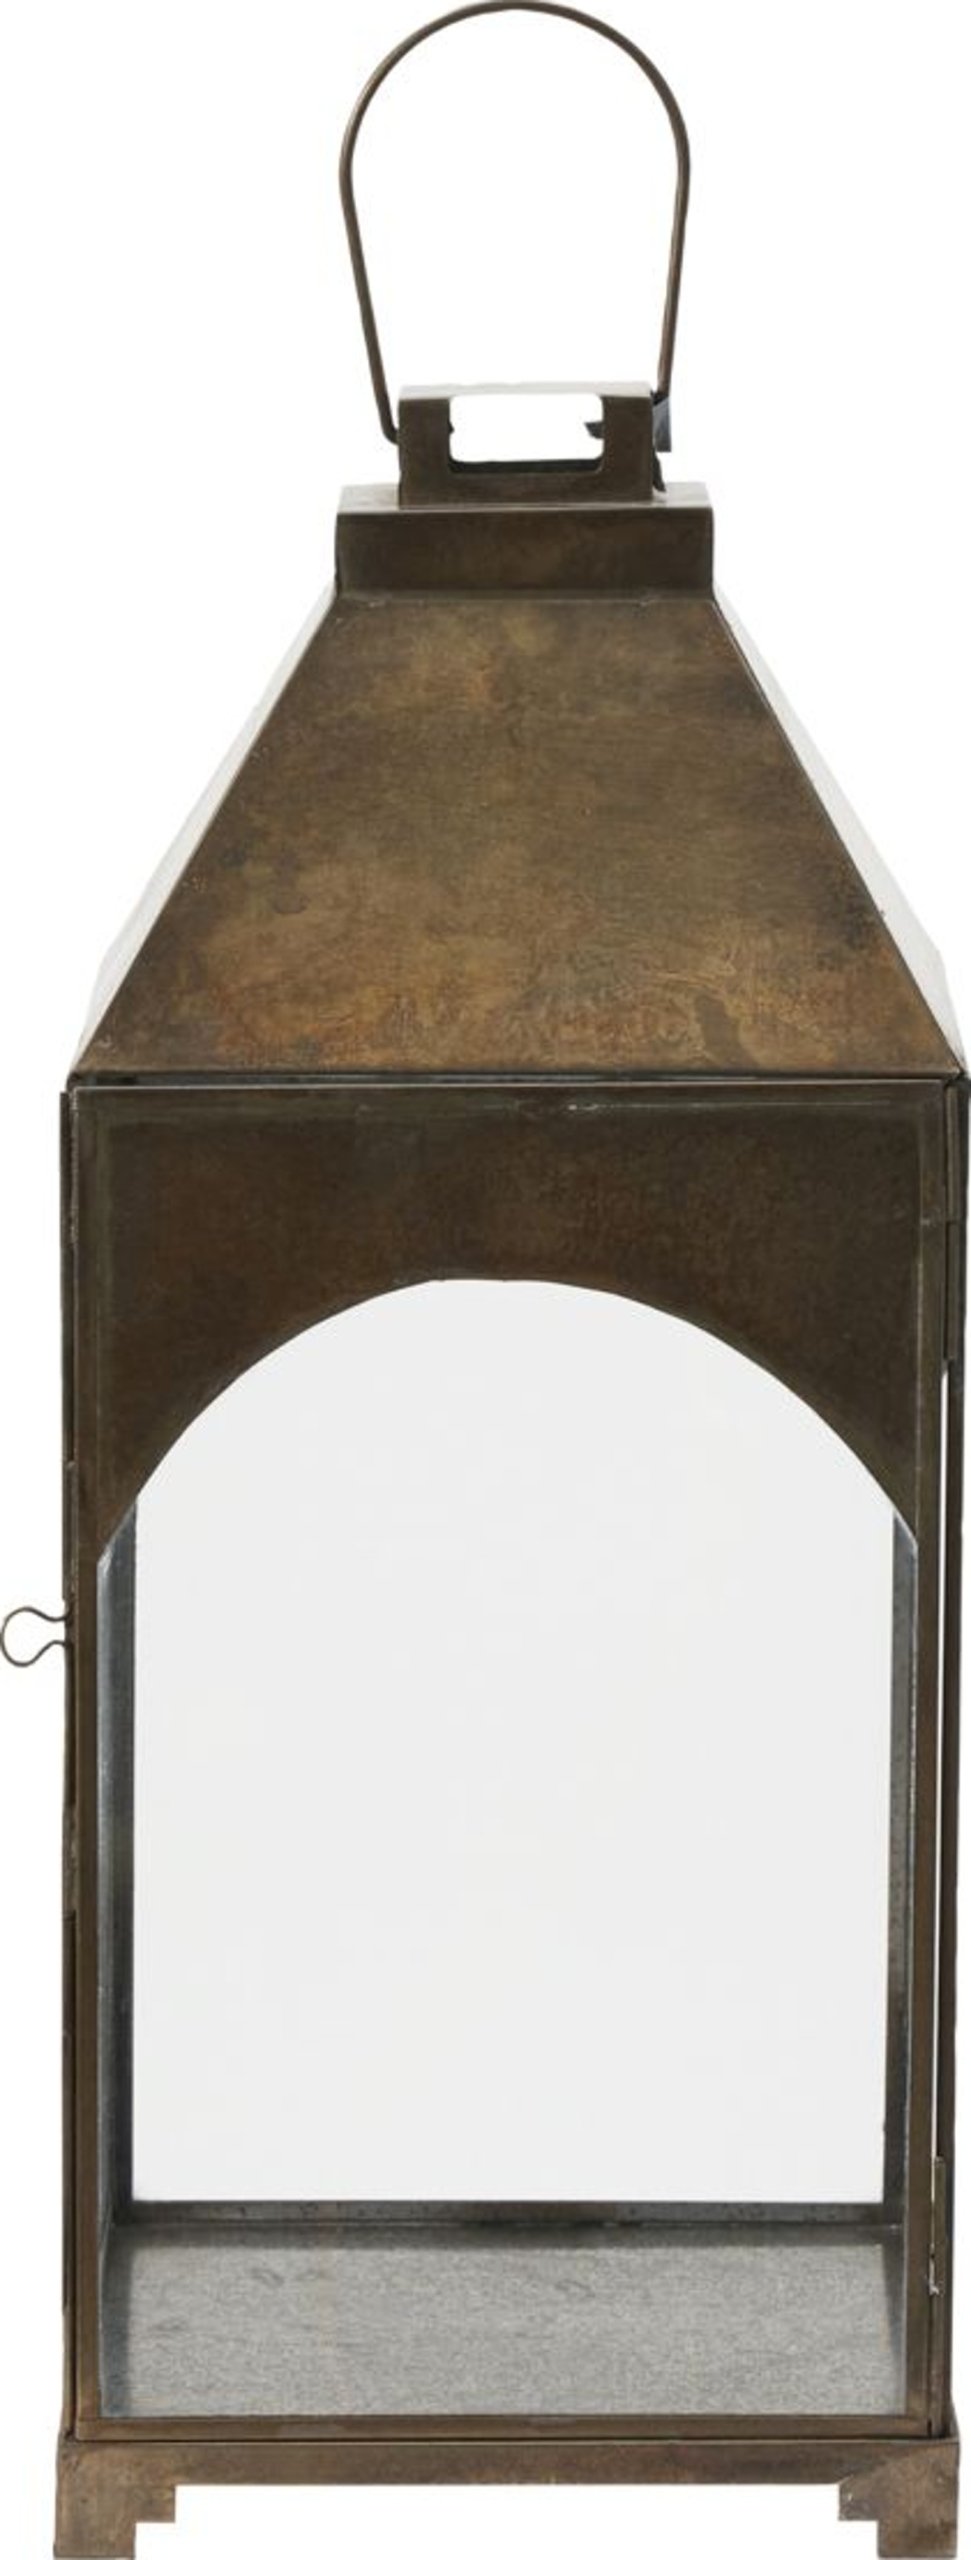 Billede af Arch, Lanterne by House Doctor (H: 43 cm. x B: 18 cm. x L: 18 cm., Antik Messing)